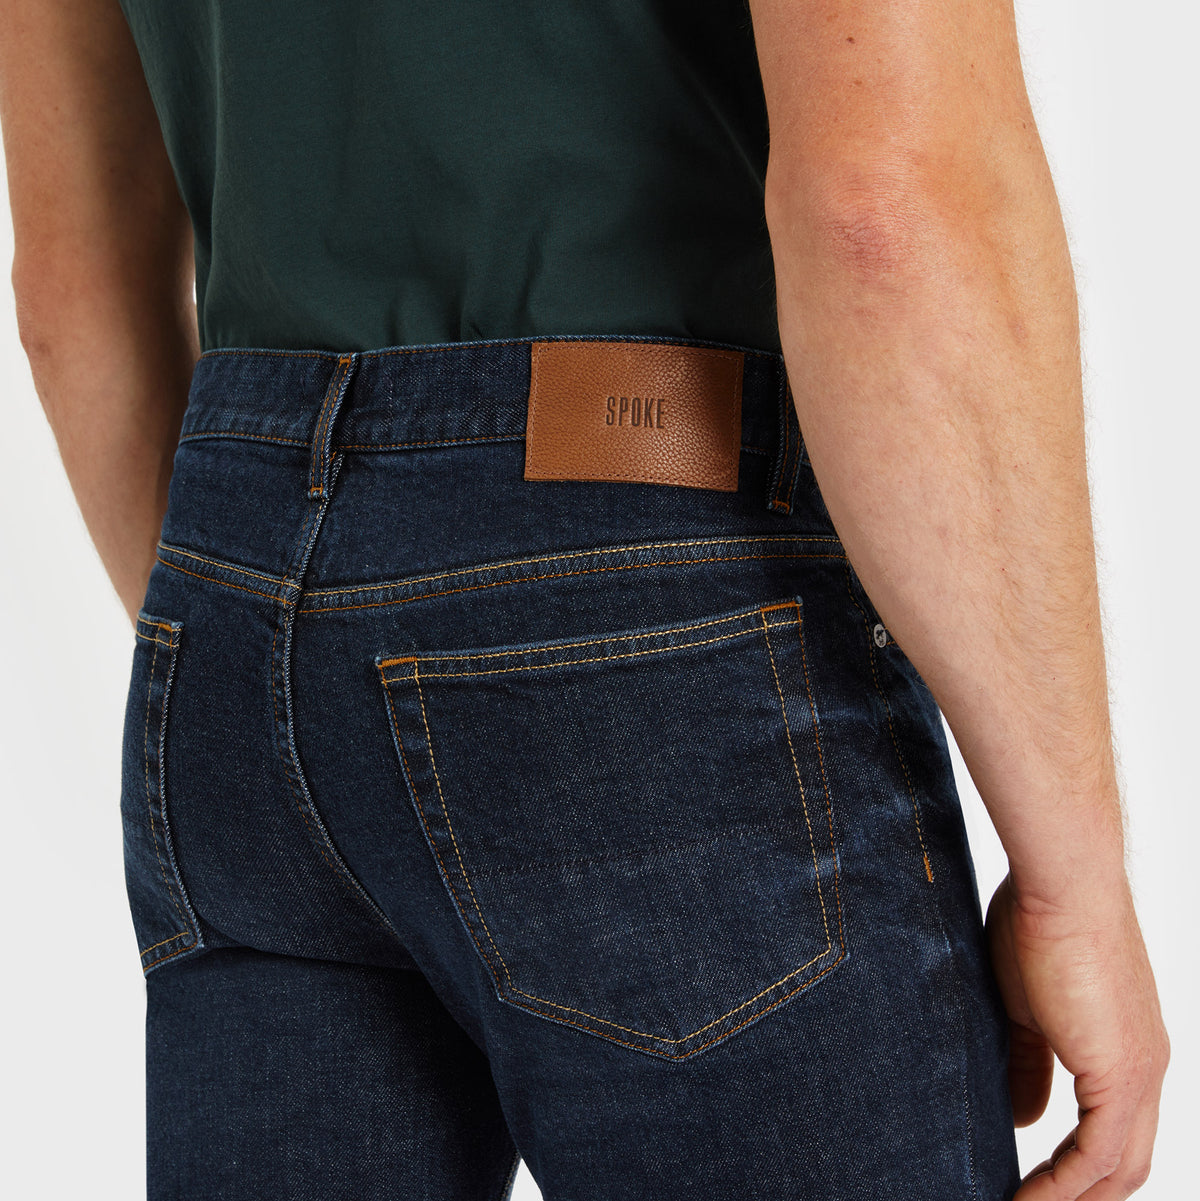 SPOKE 12oz Italian Denim - 1 Year Wash Custom Fit Jeans - SPOKE